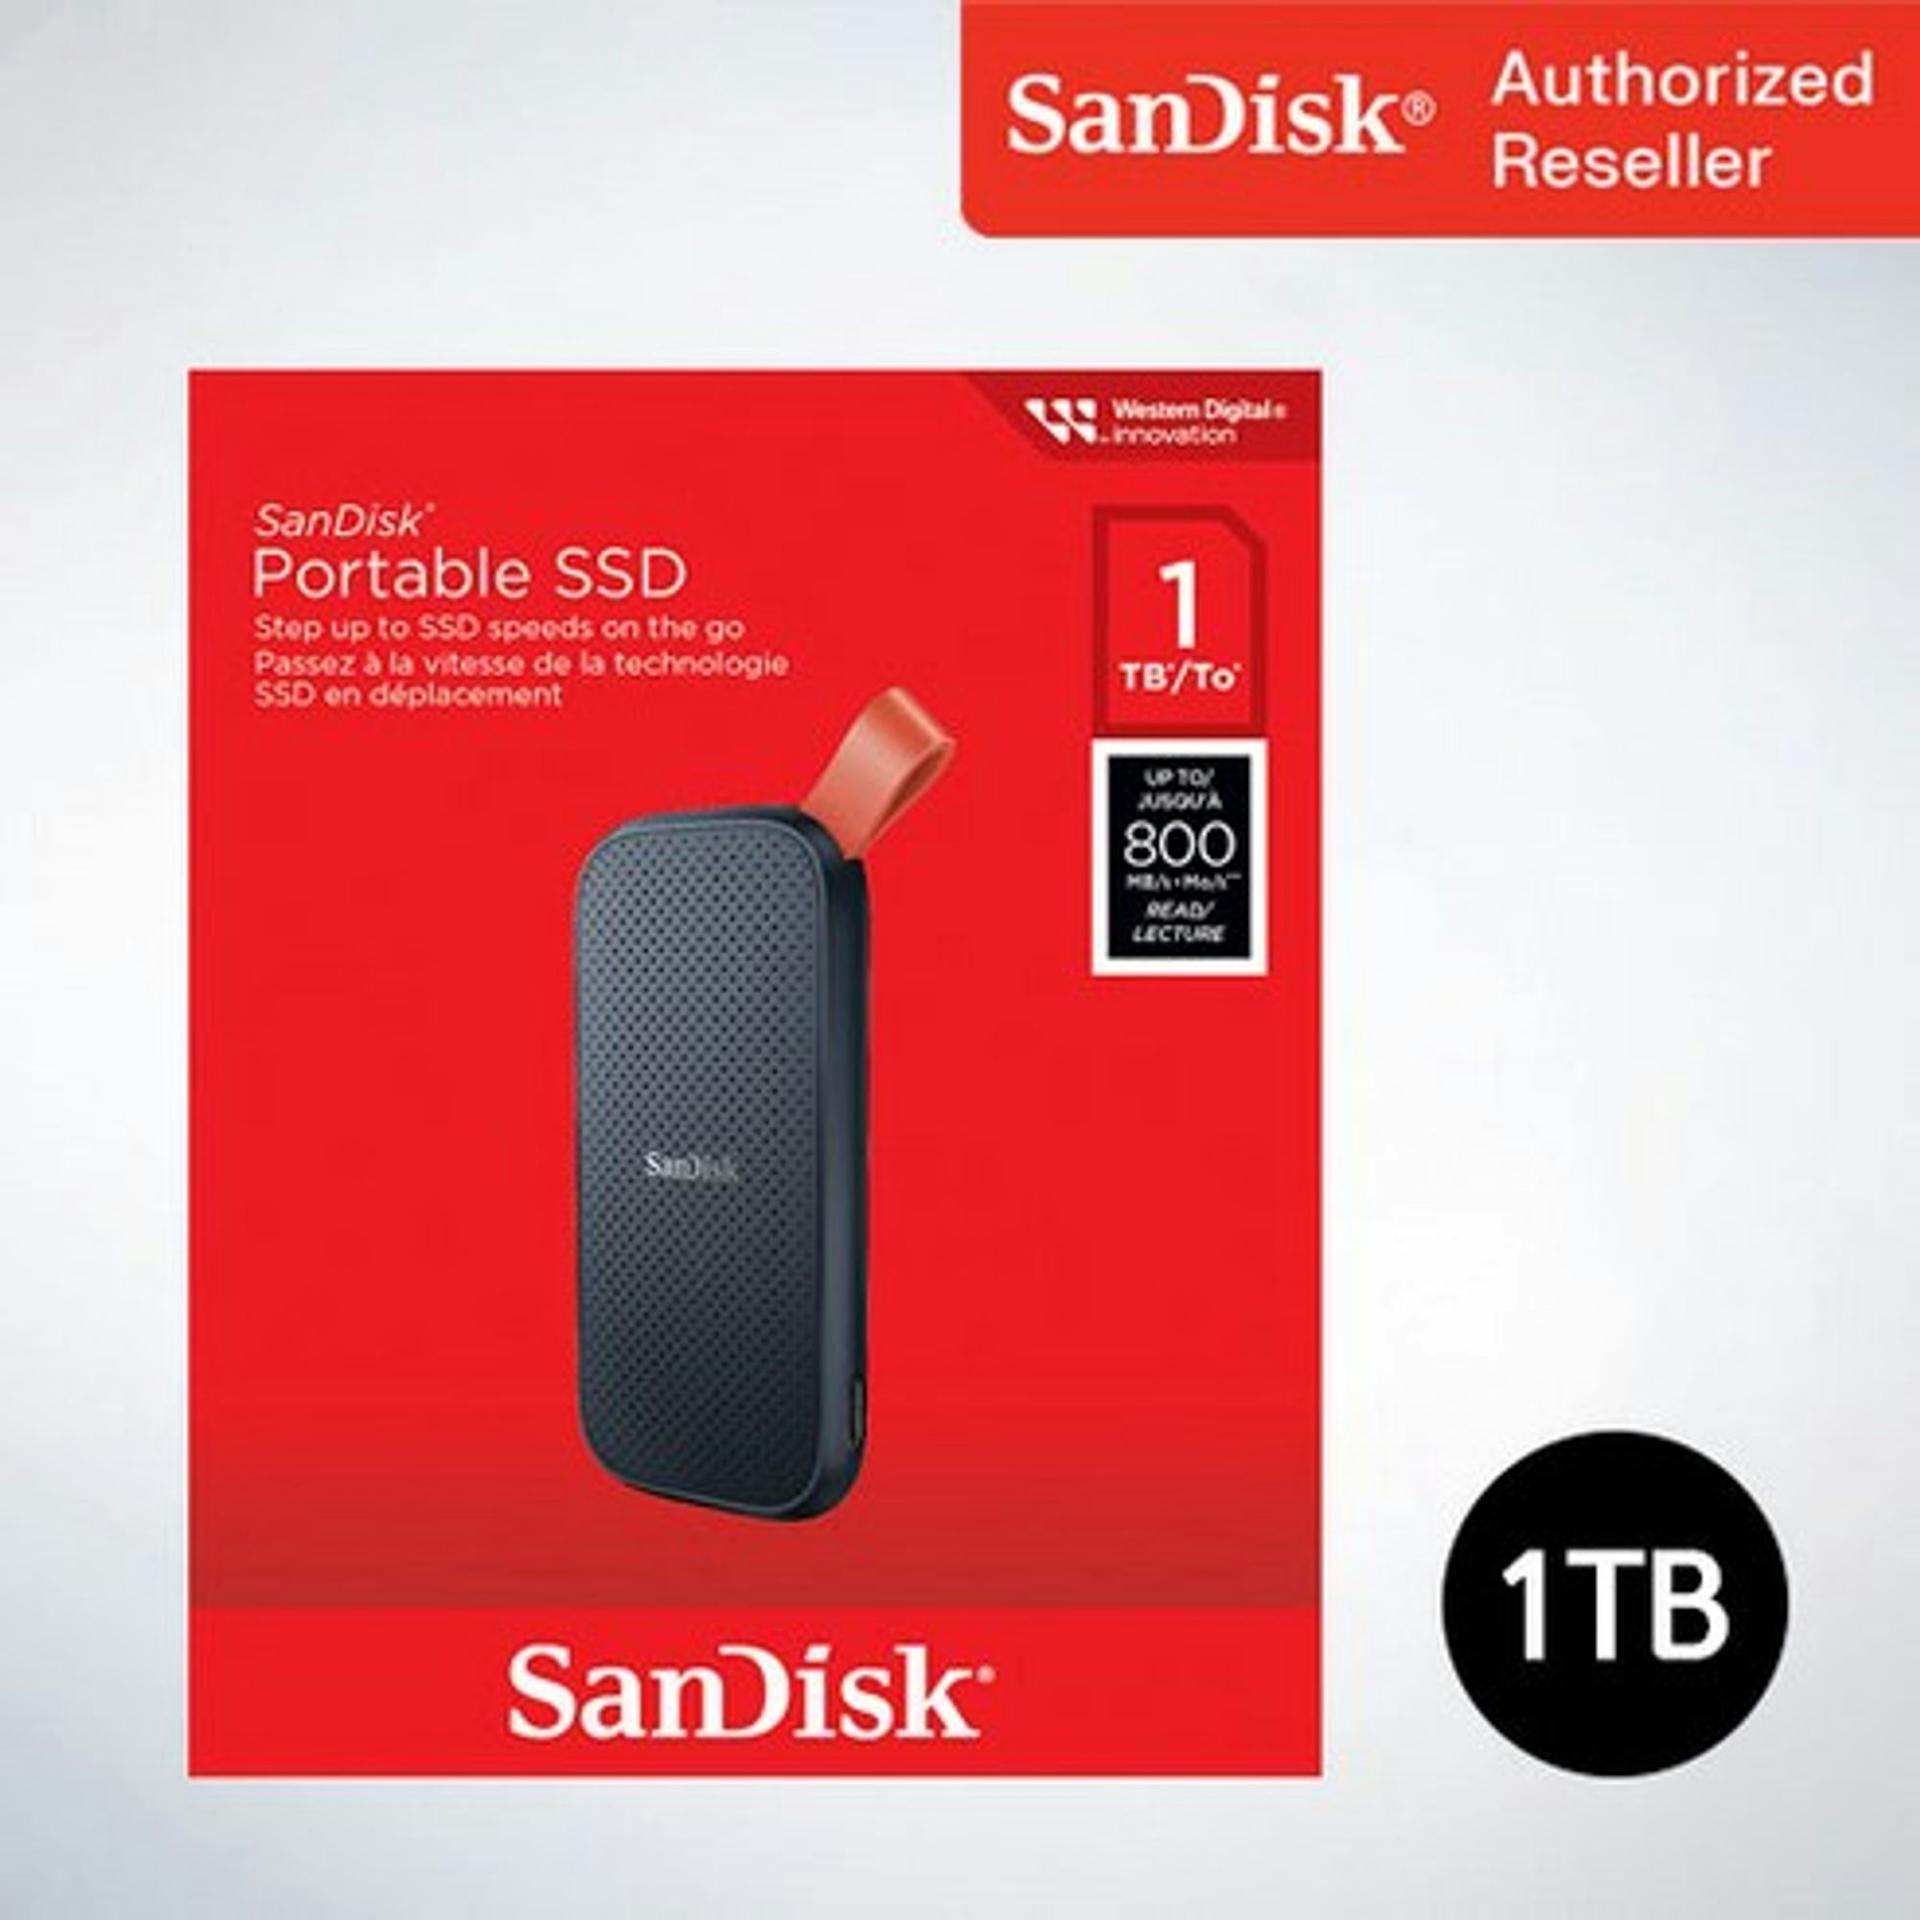 외장ssd 샌디스크 Portable SSD E30 - 성능과 안정성을 겸비한 외장 SSD 관련상품